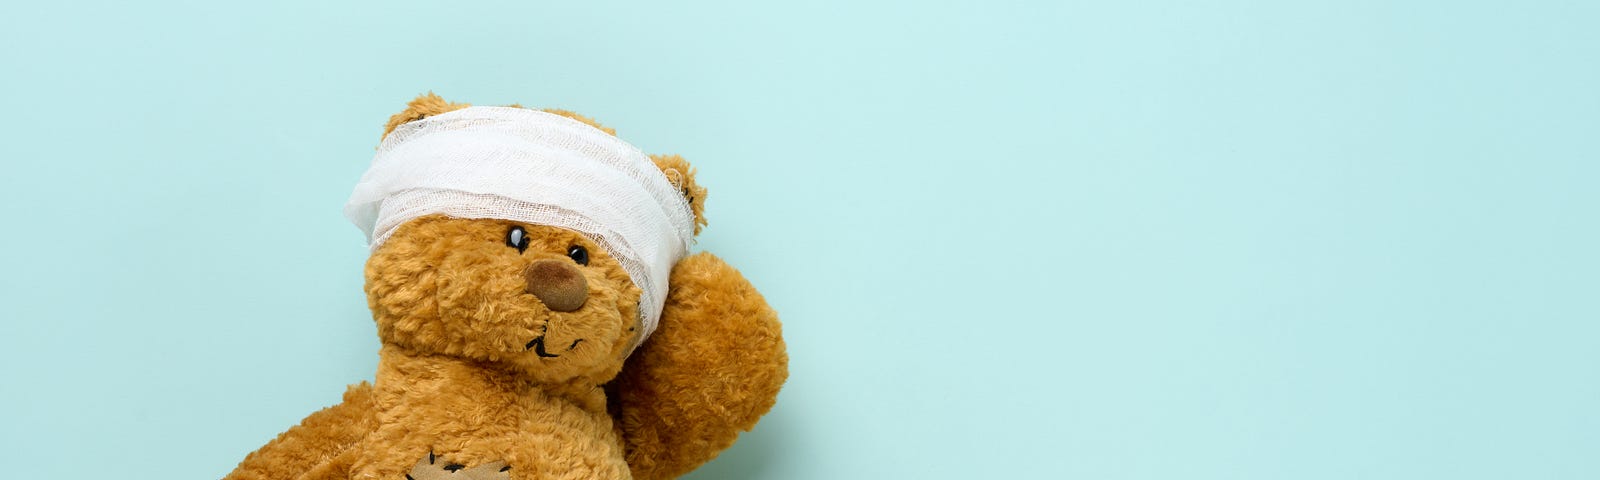 A teddy bear wears a head bandage in a sign of childhood trauma.